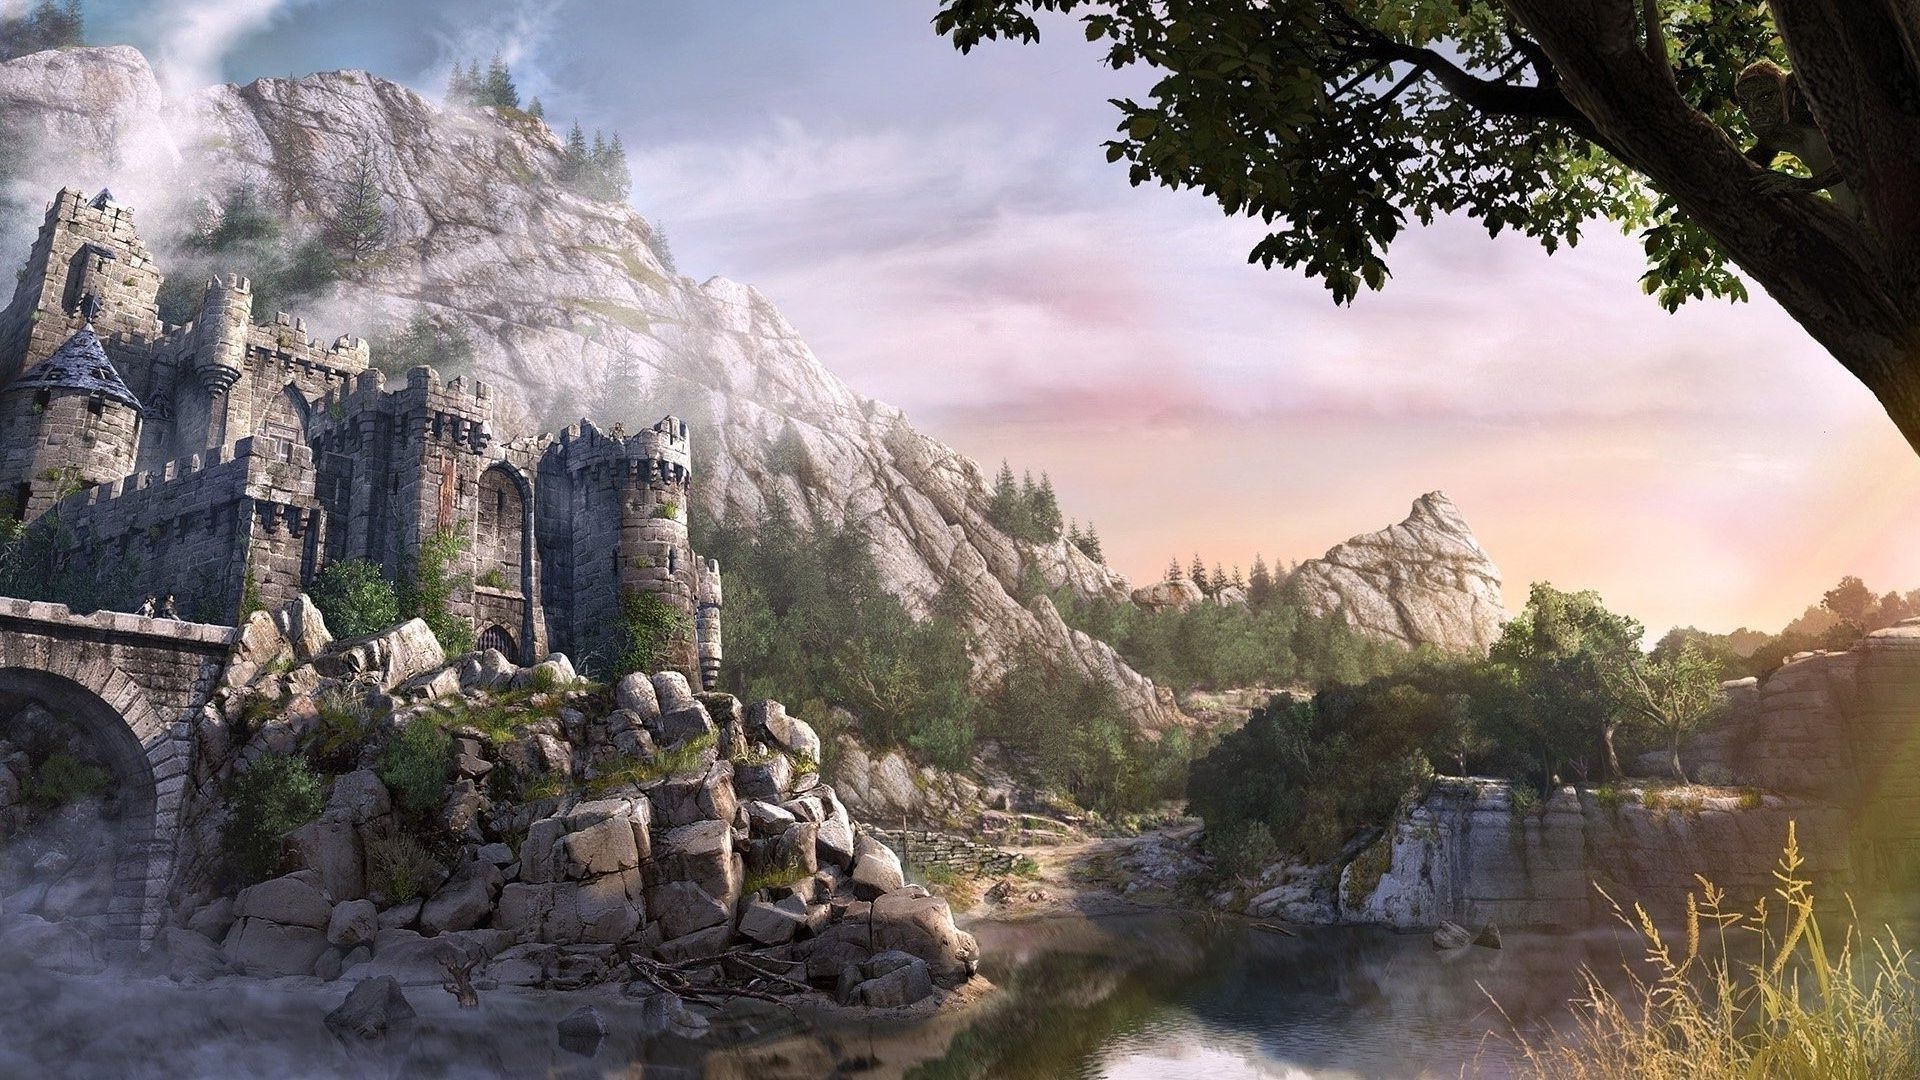 замки путешествия на открытом воздухе пейзаж природа рок дерево небо горы воды камень живописный